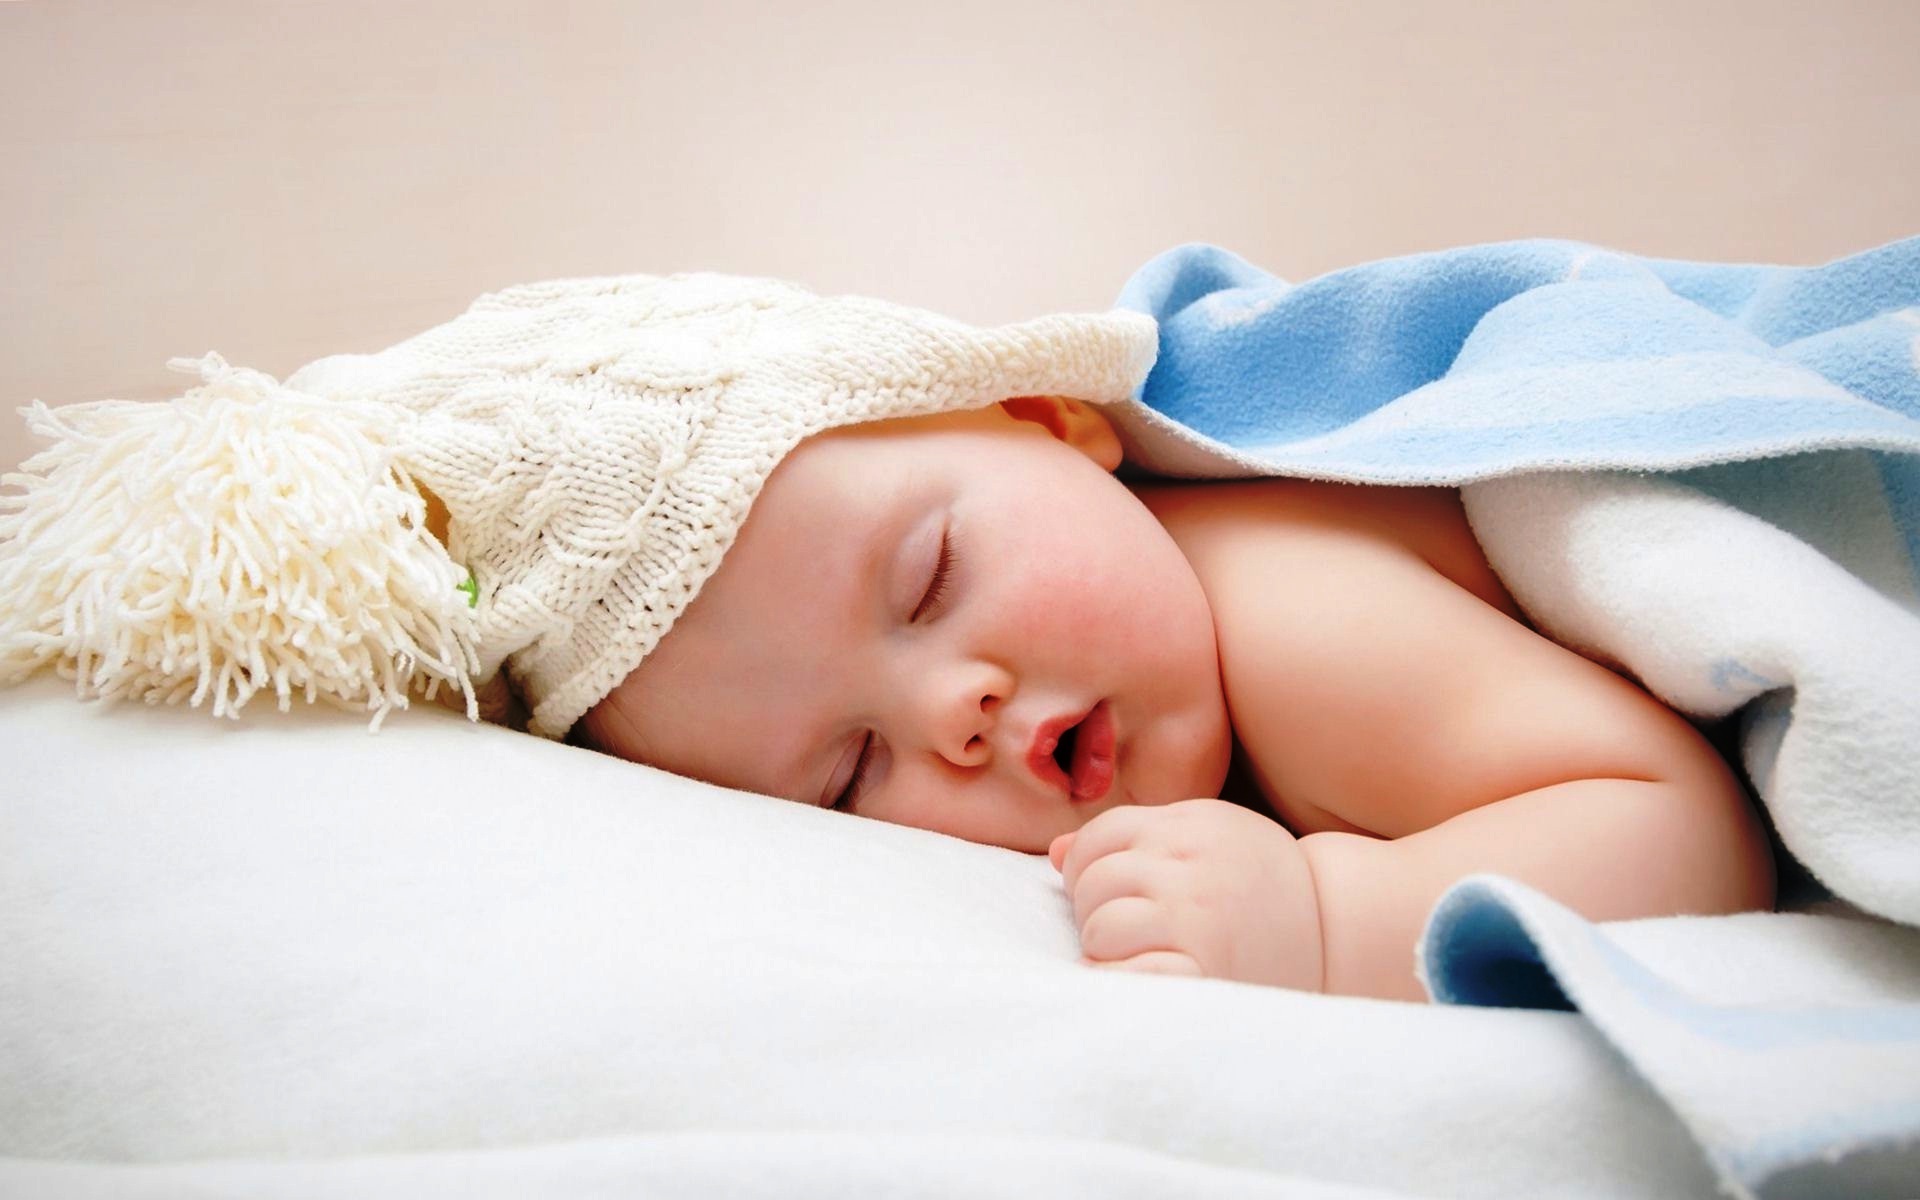 buenas noches baby wallpaper,niño,bebé,fotografía,dormir,siesta